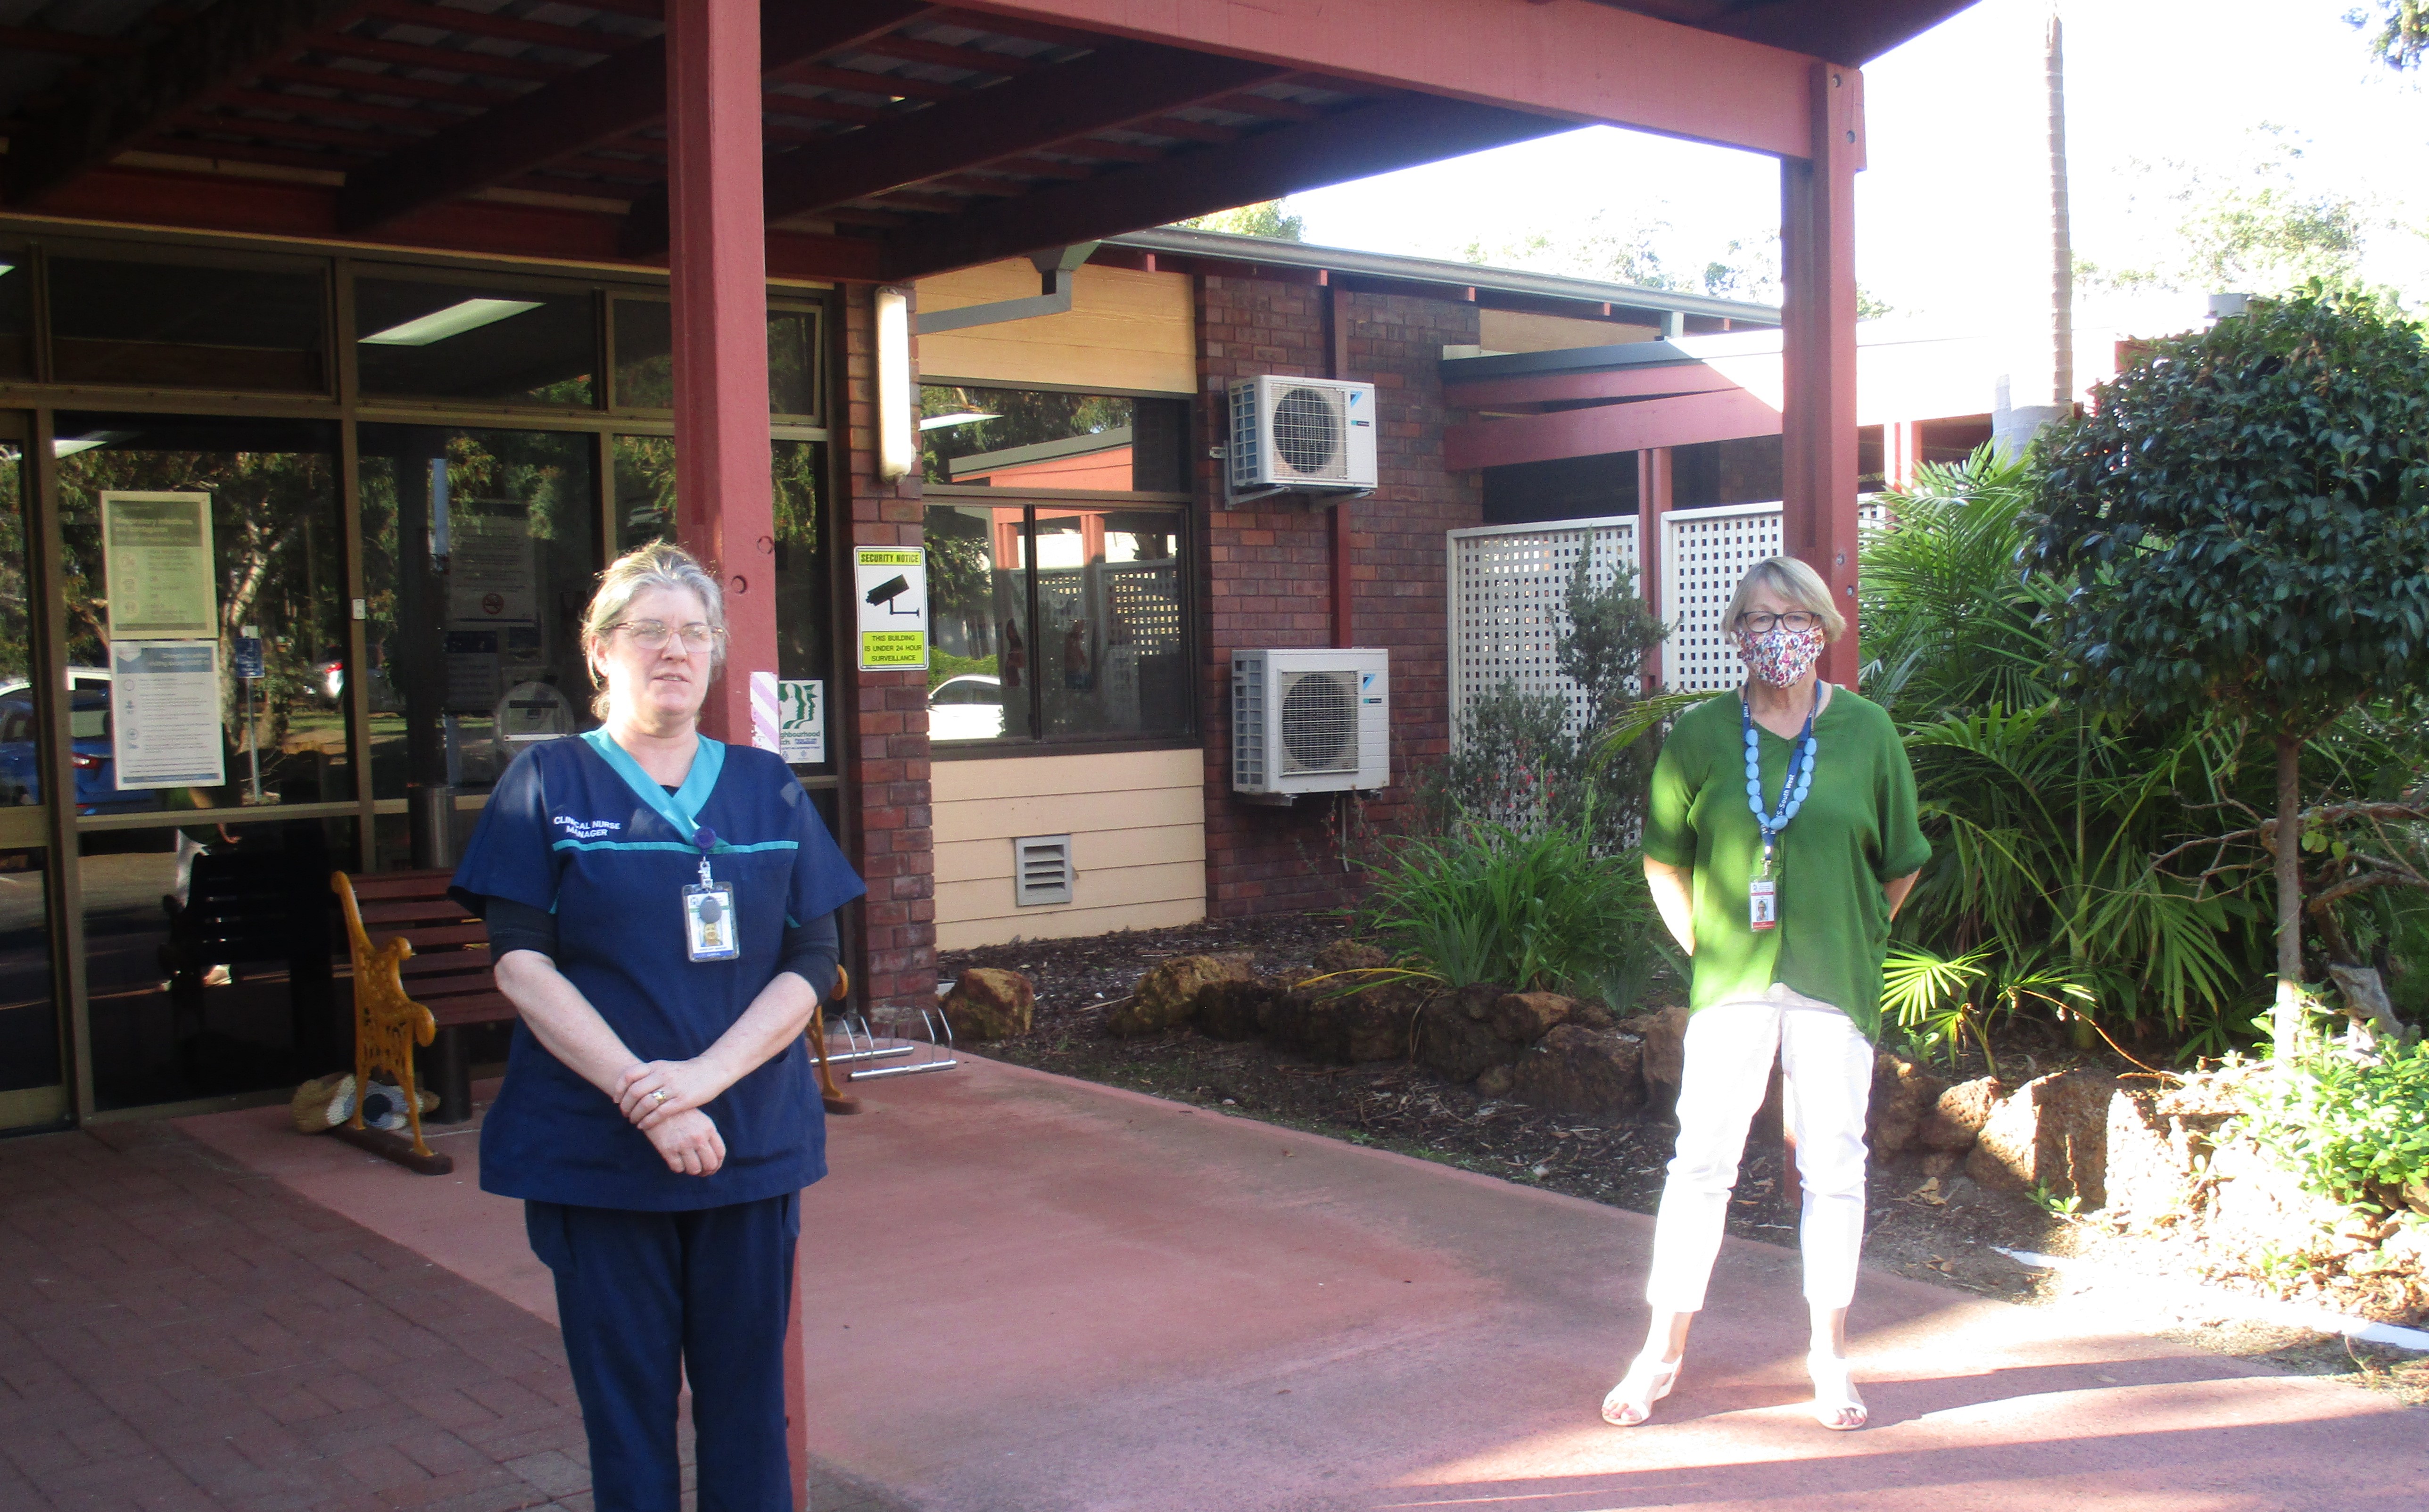 Staff member stands outside Donnybrook Hospital